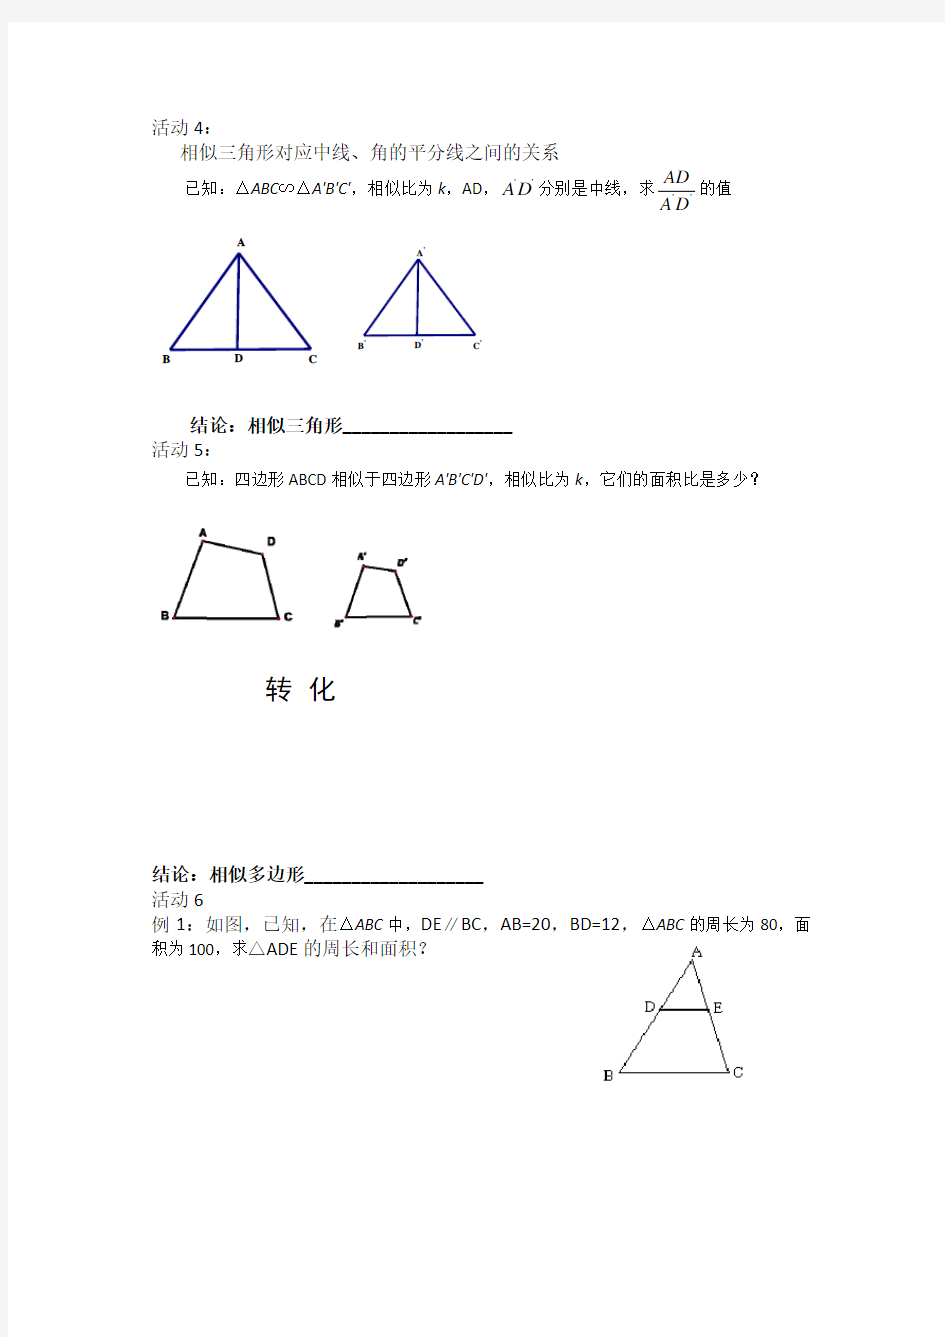 相似三角形的周长和面积